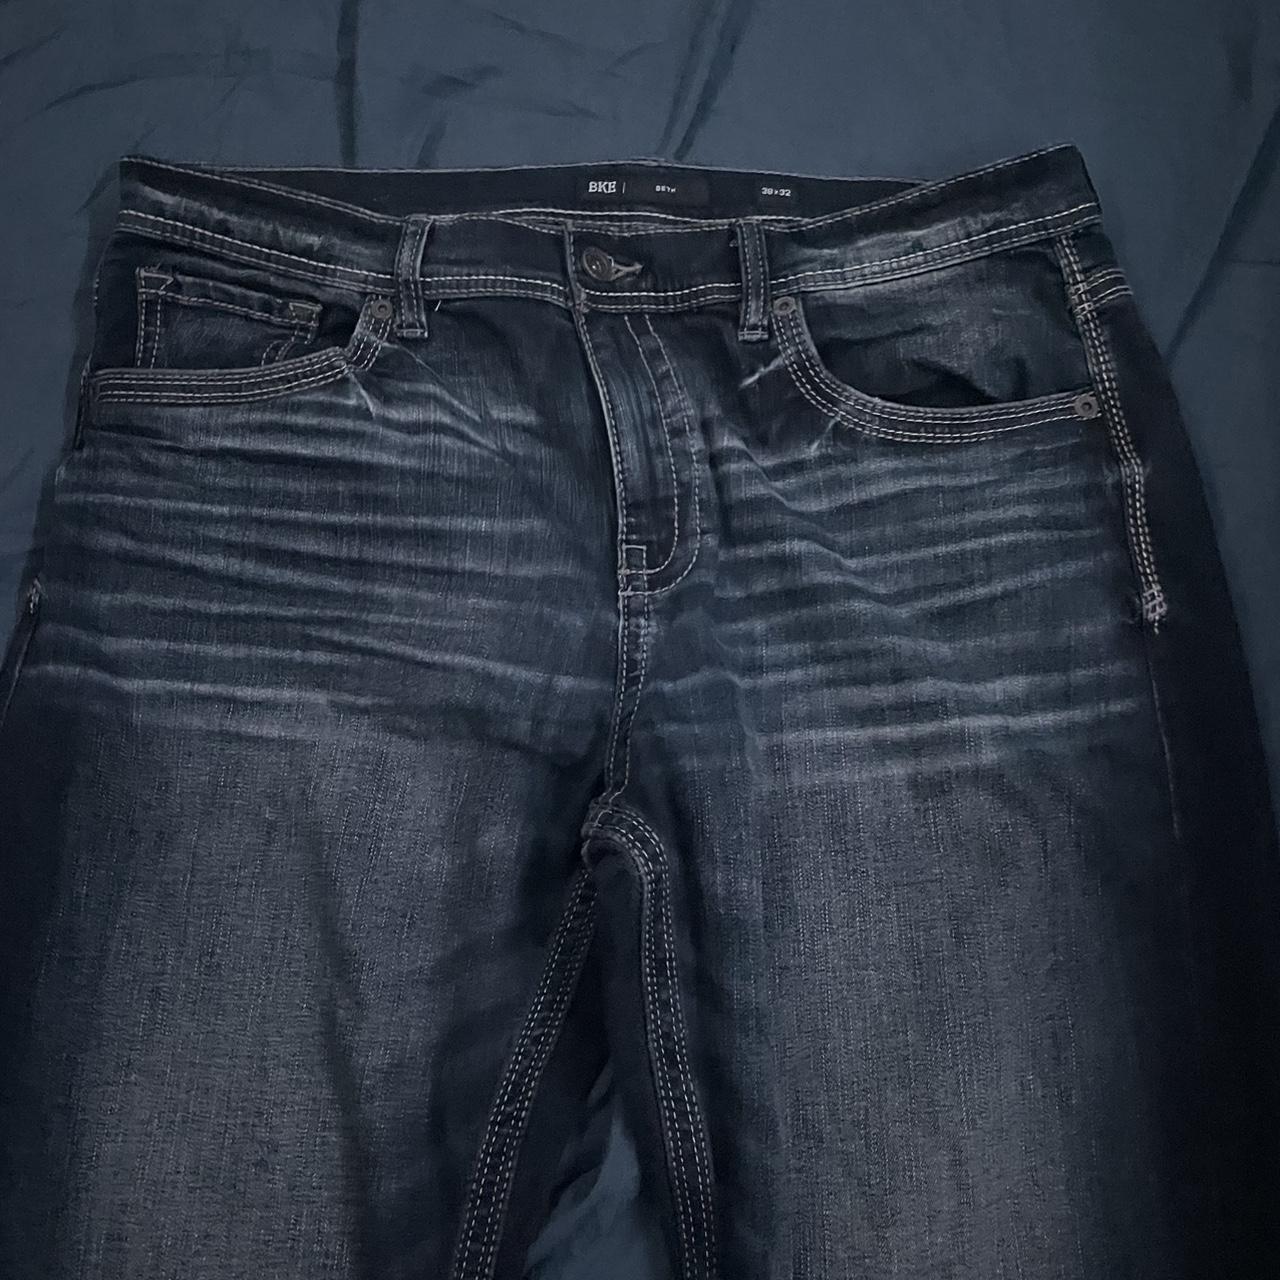 BKE BAGGY Jeans Back Pocket Design Size 38x32... - Depop